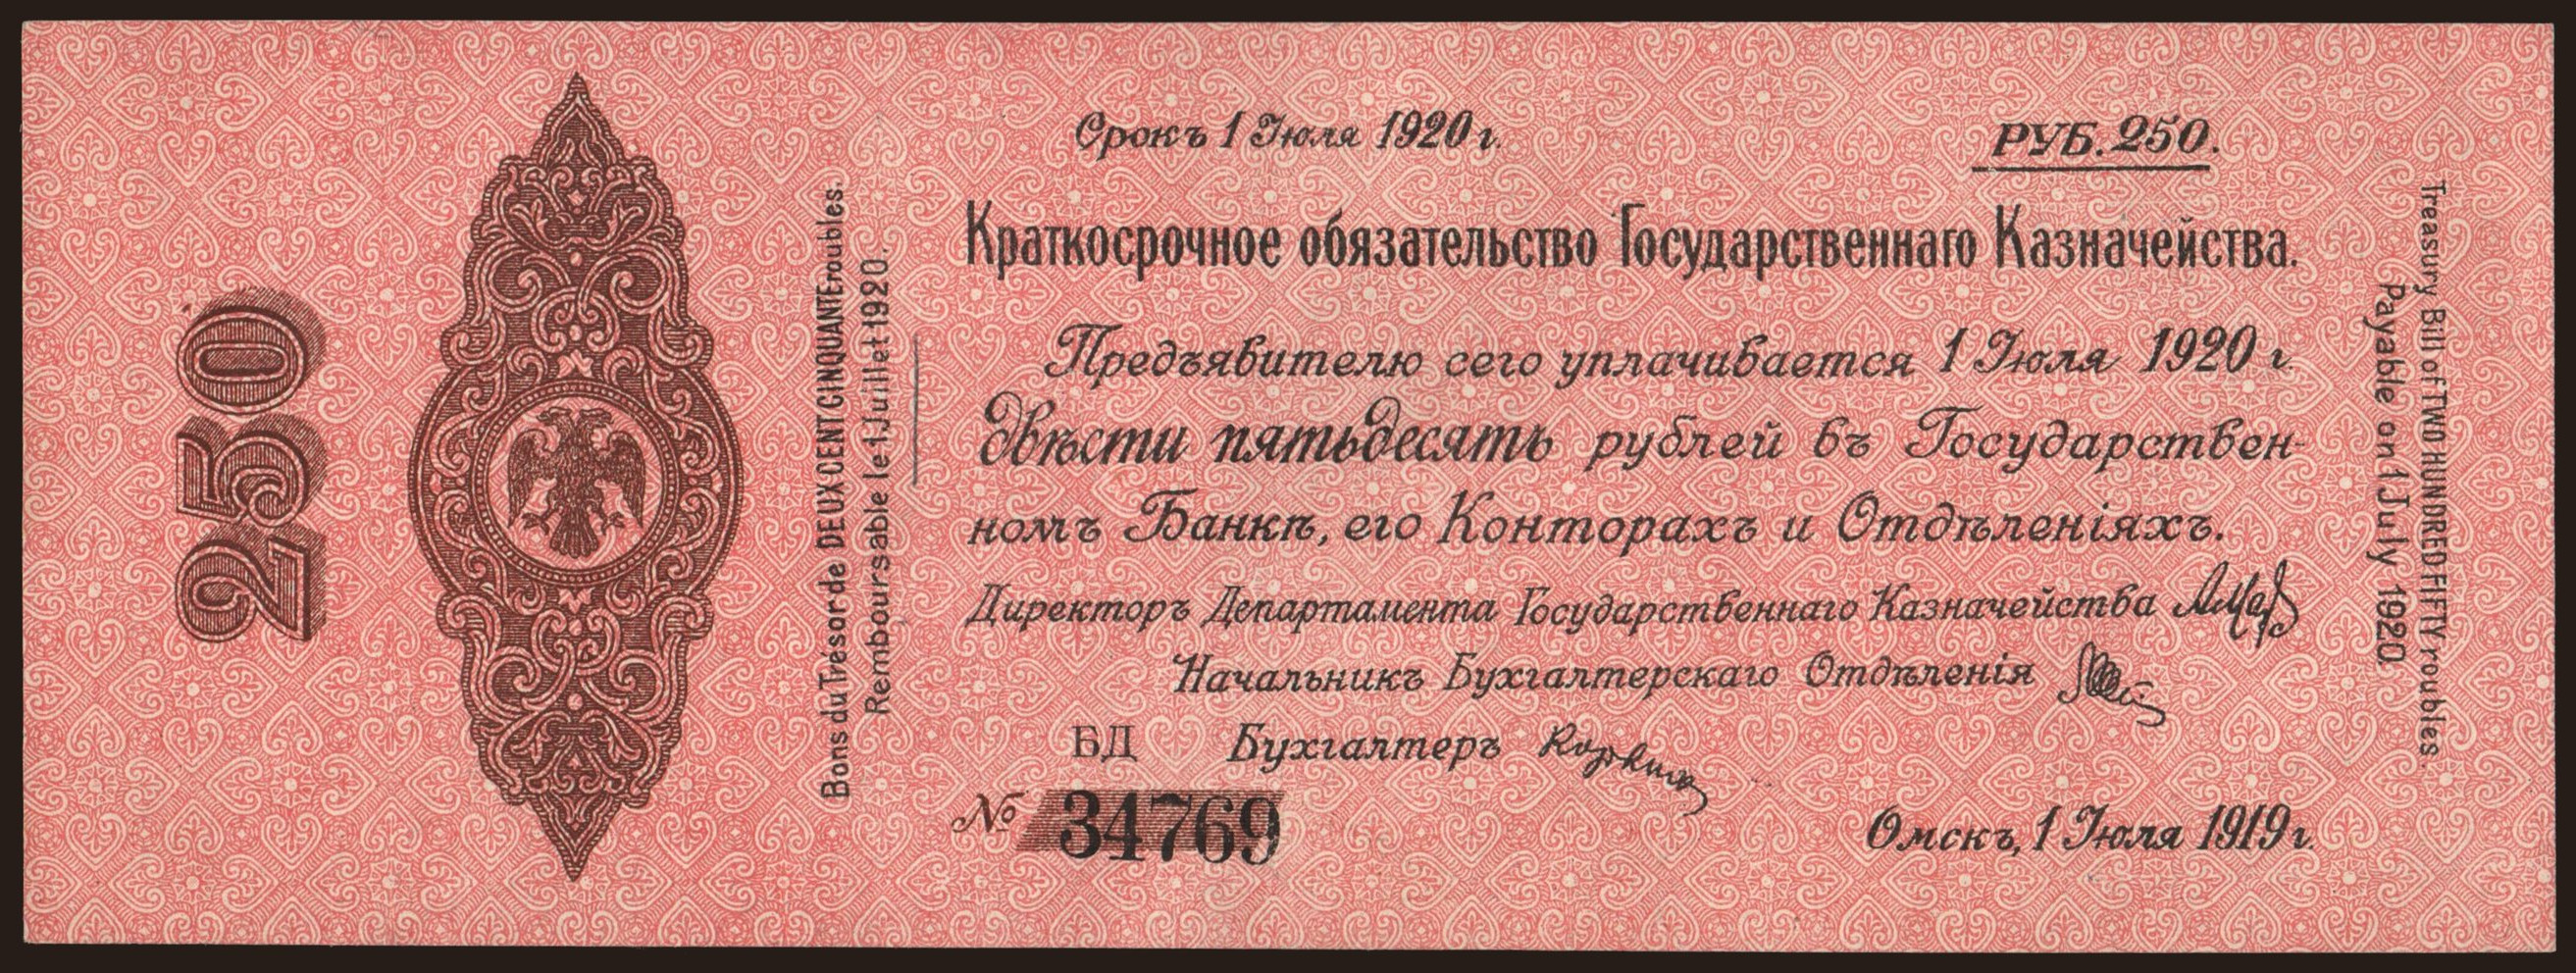 Siberia, 250 rubel, 1919